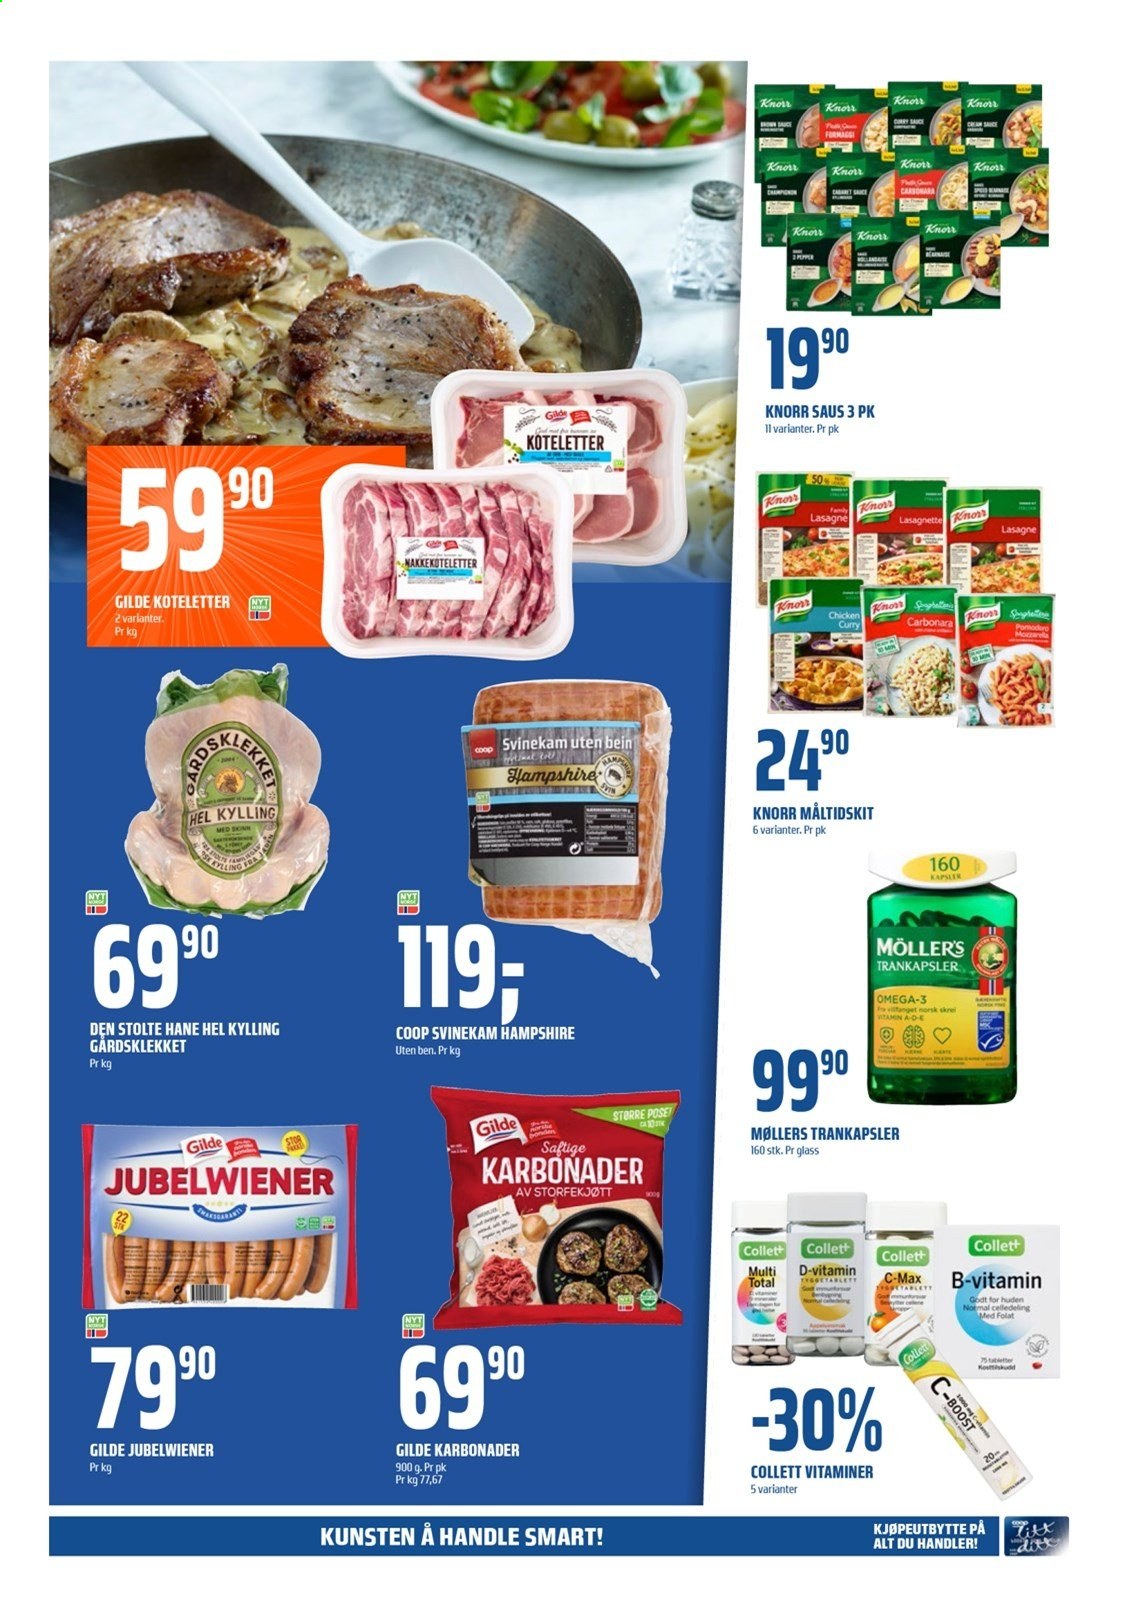 thumbnail - Kundeavis Coop Obs - 31.1.2021 - 6.2.2021 - Produkter fra tilbudsaviser - hel kylling, kyllingkjøtt, storfekjøtt, karbonader, nakkekoteletter, Knorr, lasagne, svinekam, ost, curry. Side 5.